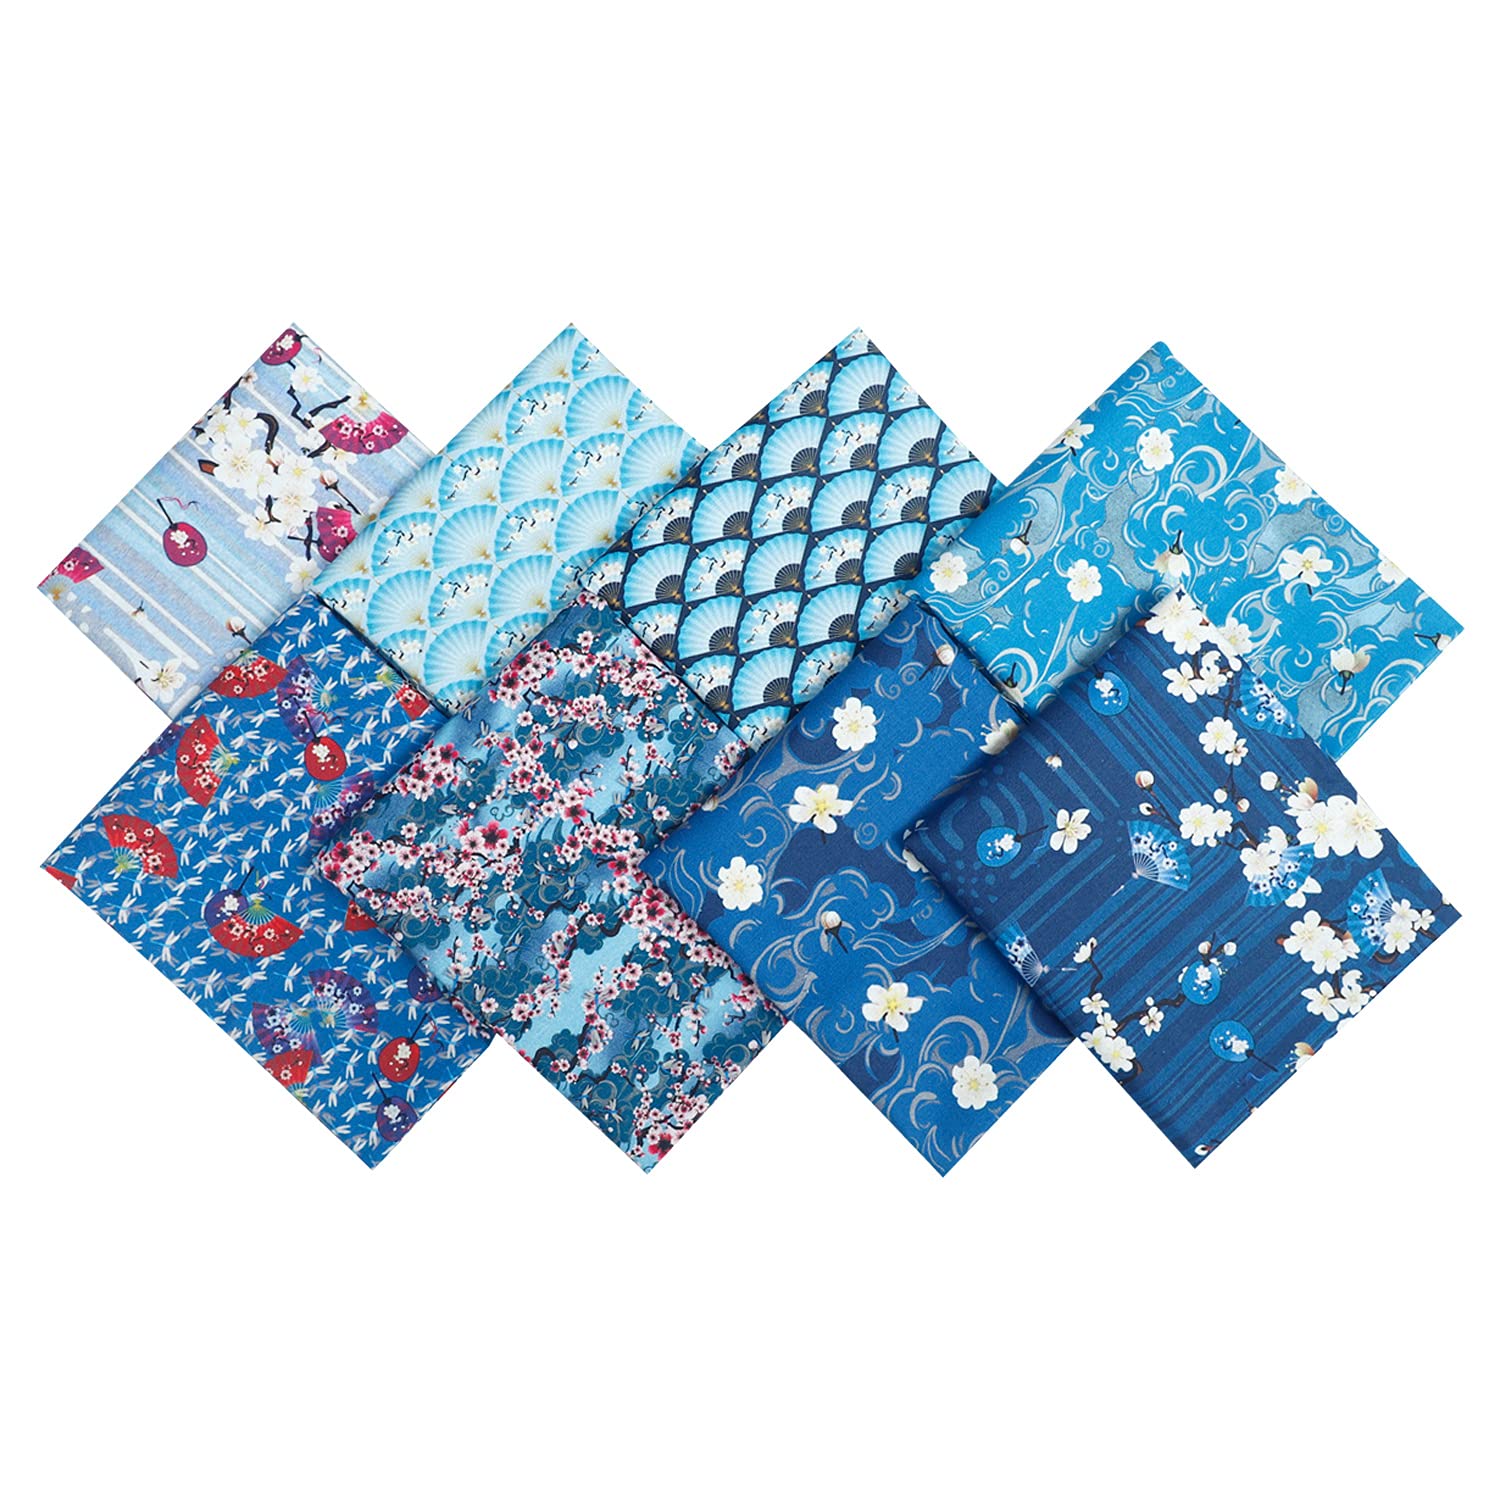 18 x 22 Fat Quarters Fabric Bundles 100% Cotton Quilting Fabric Bundles  for Quilt, Sewing Project, Patchwork Precut Quilt Squares